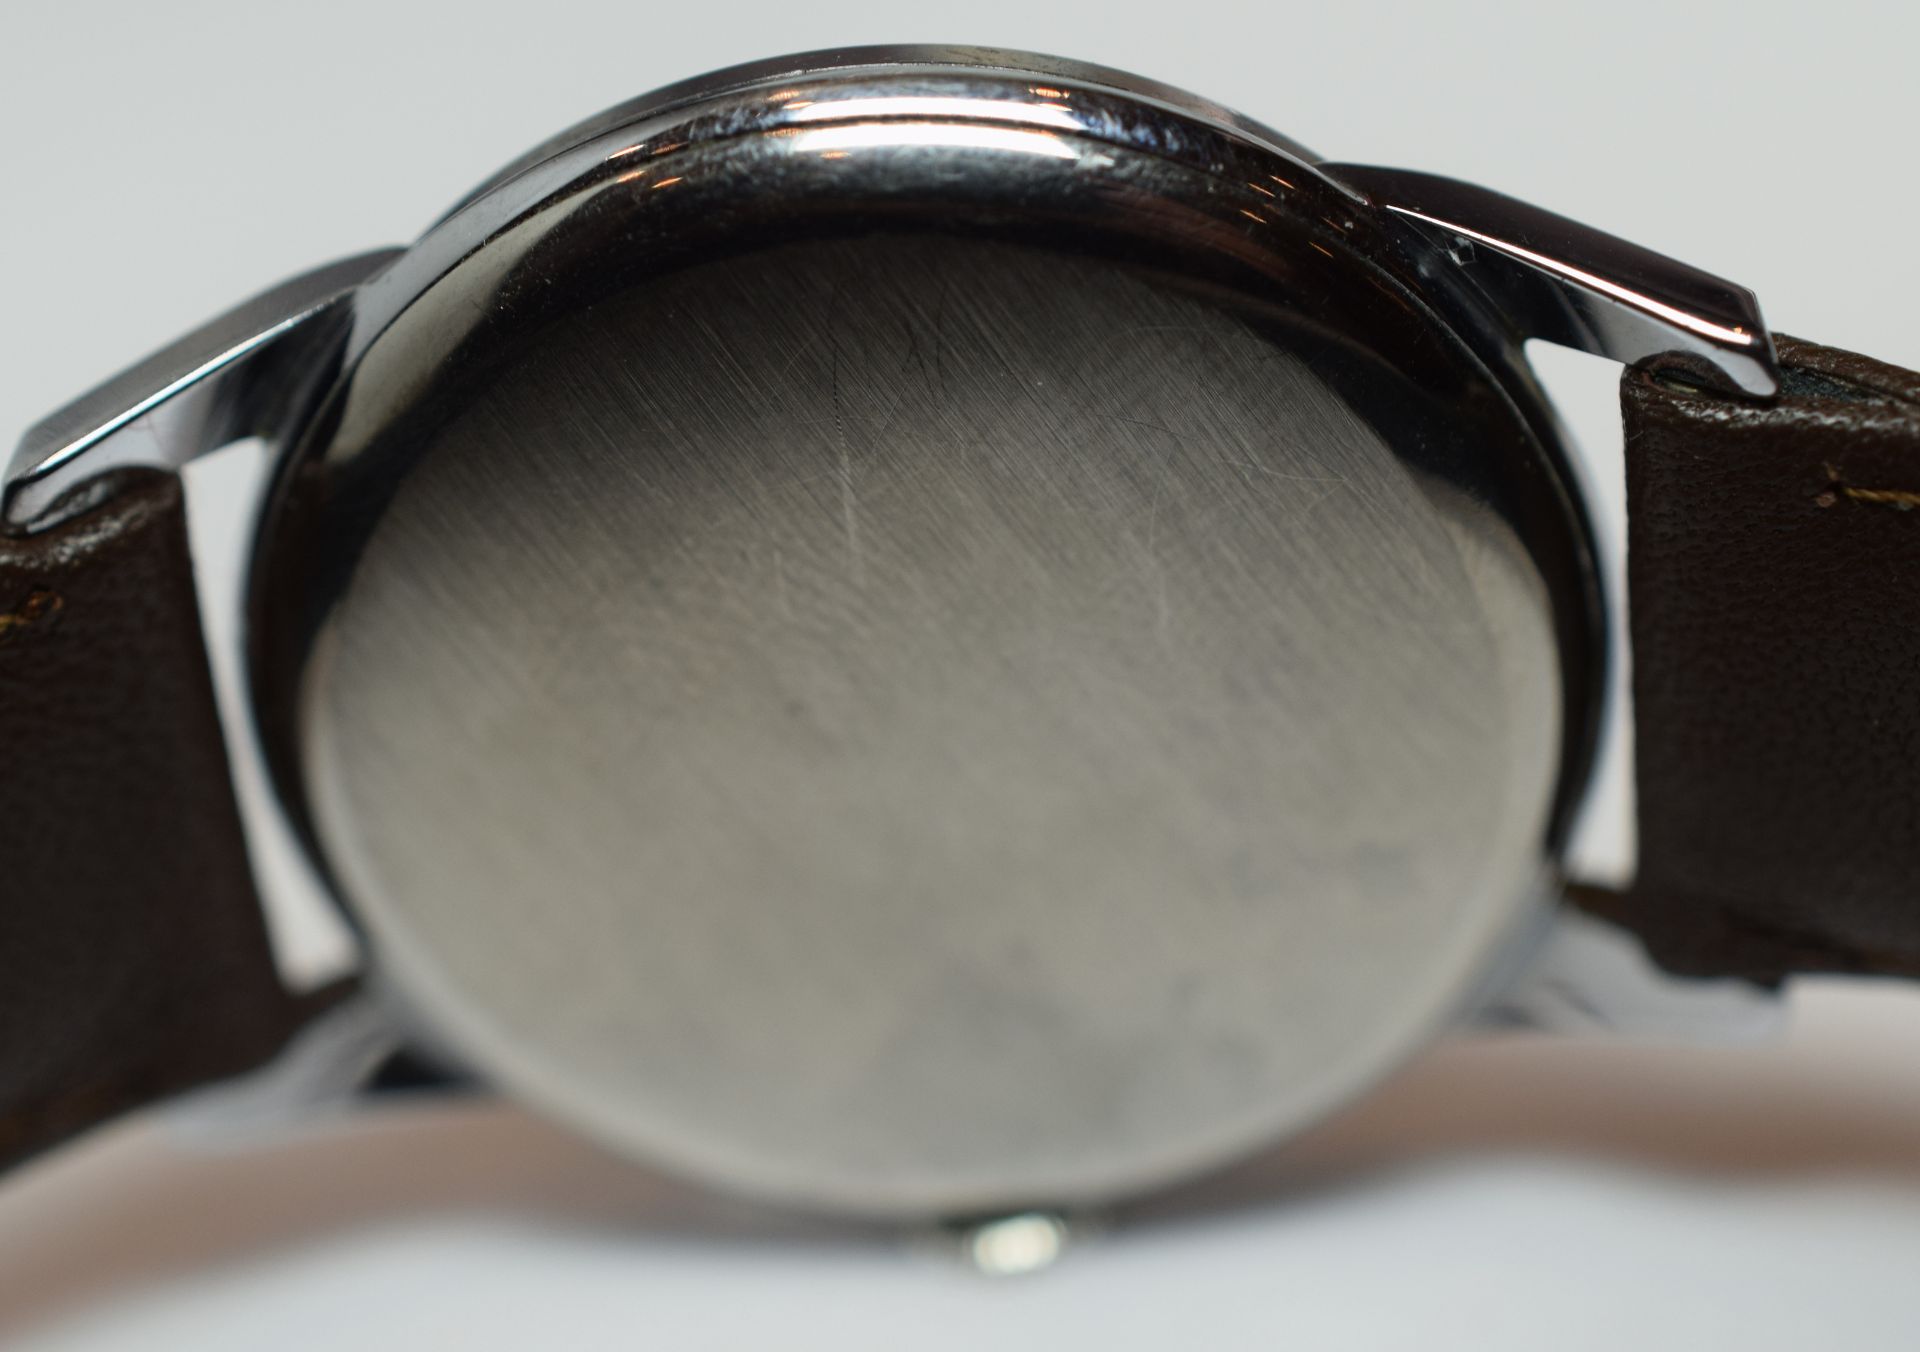 Cyma Gentleman's Cymaflex Wristwatch - Image 4 of 4